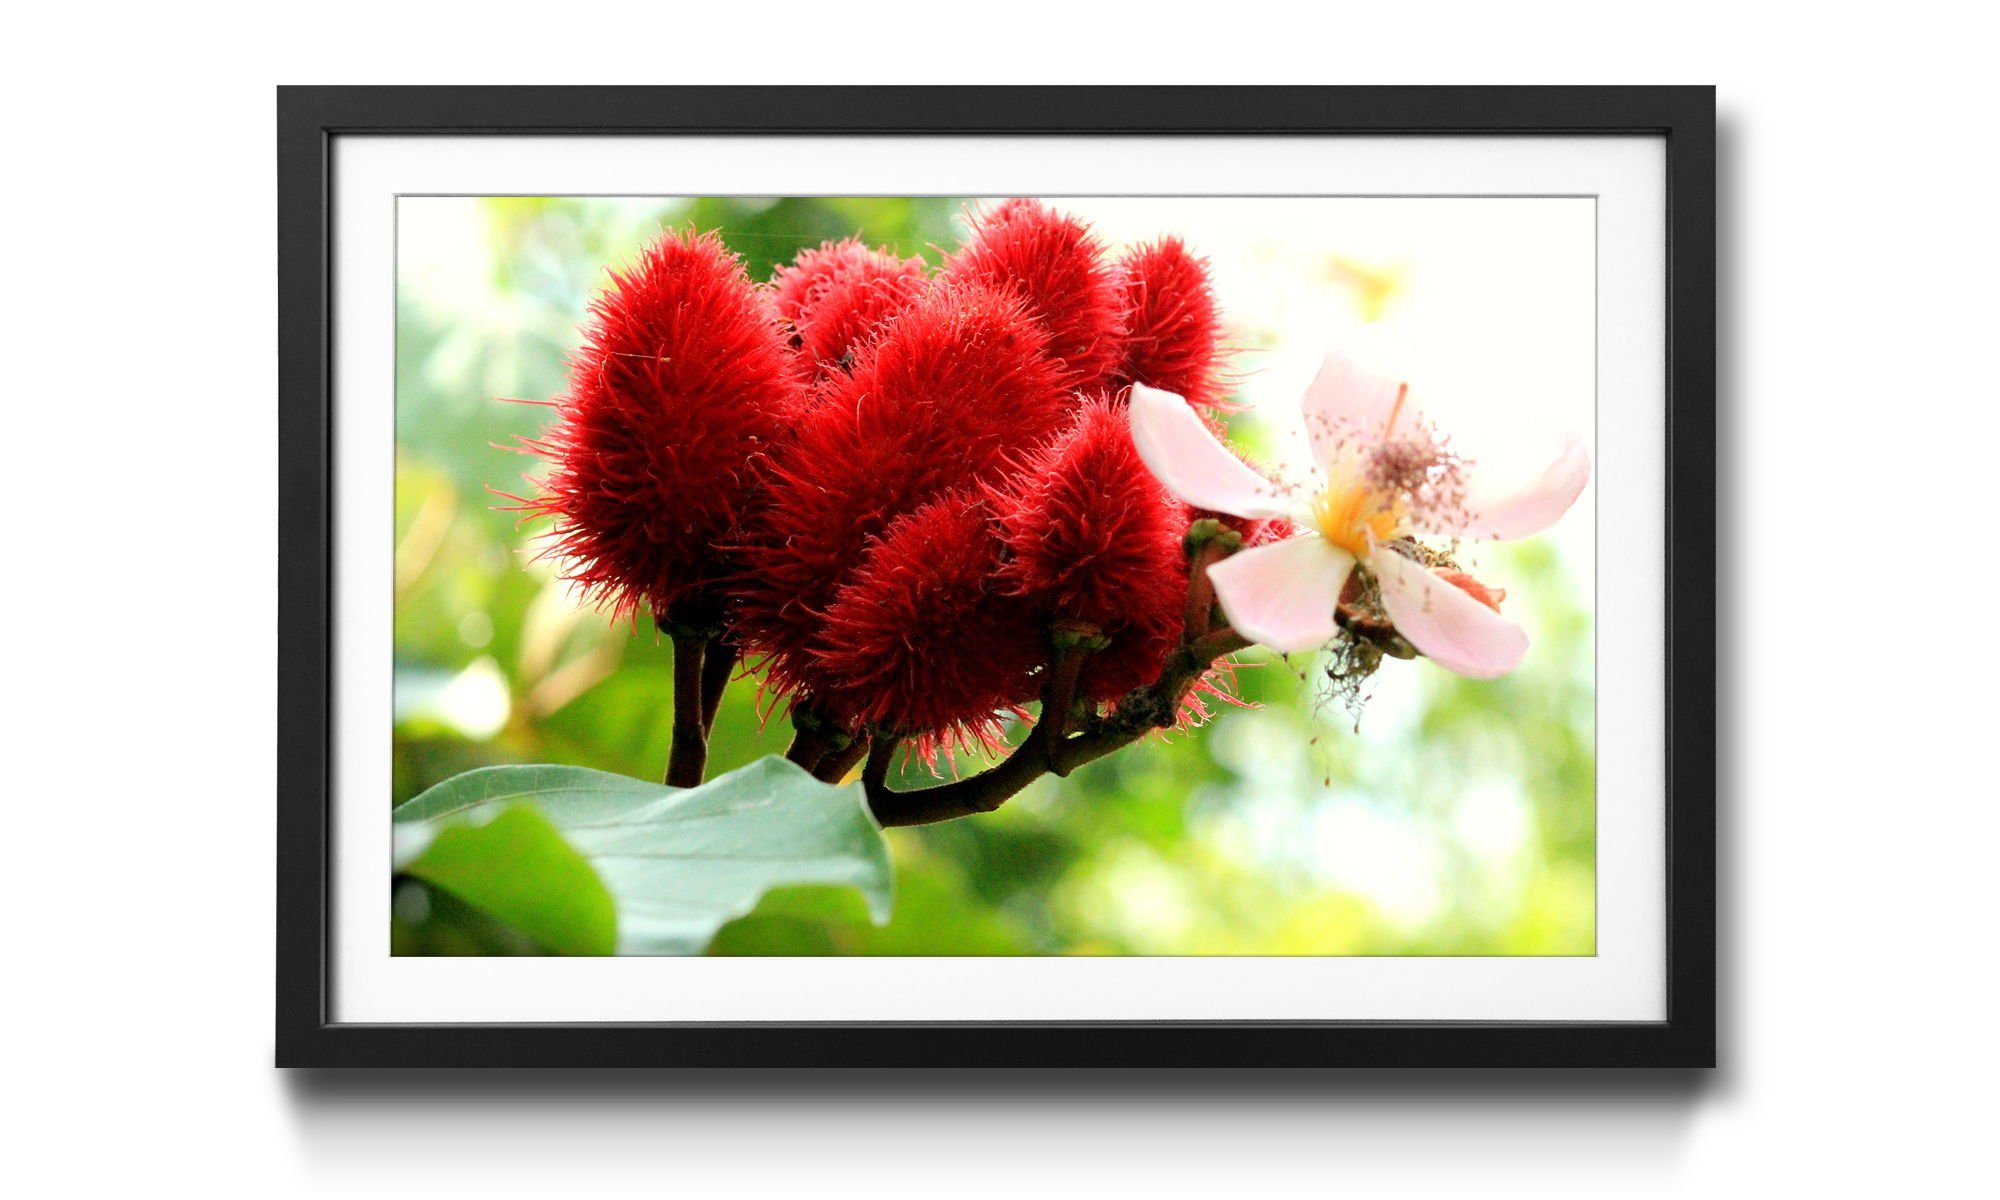 WandbilderXXL Bild mit Blumen, Wandbild, Rahmen in Beauty erhältlich Redbud, 4 Größen